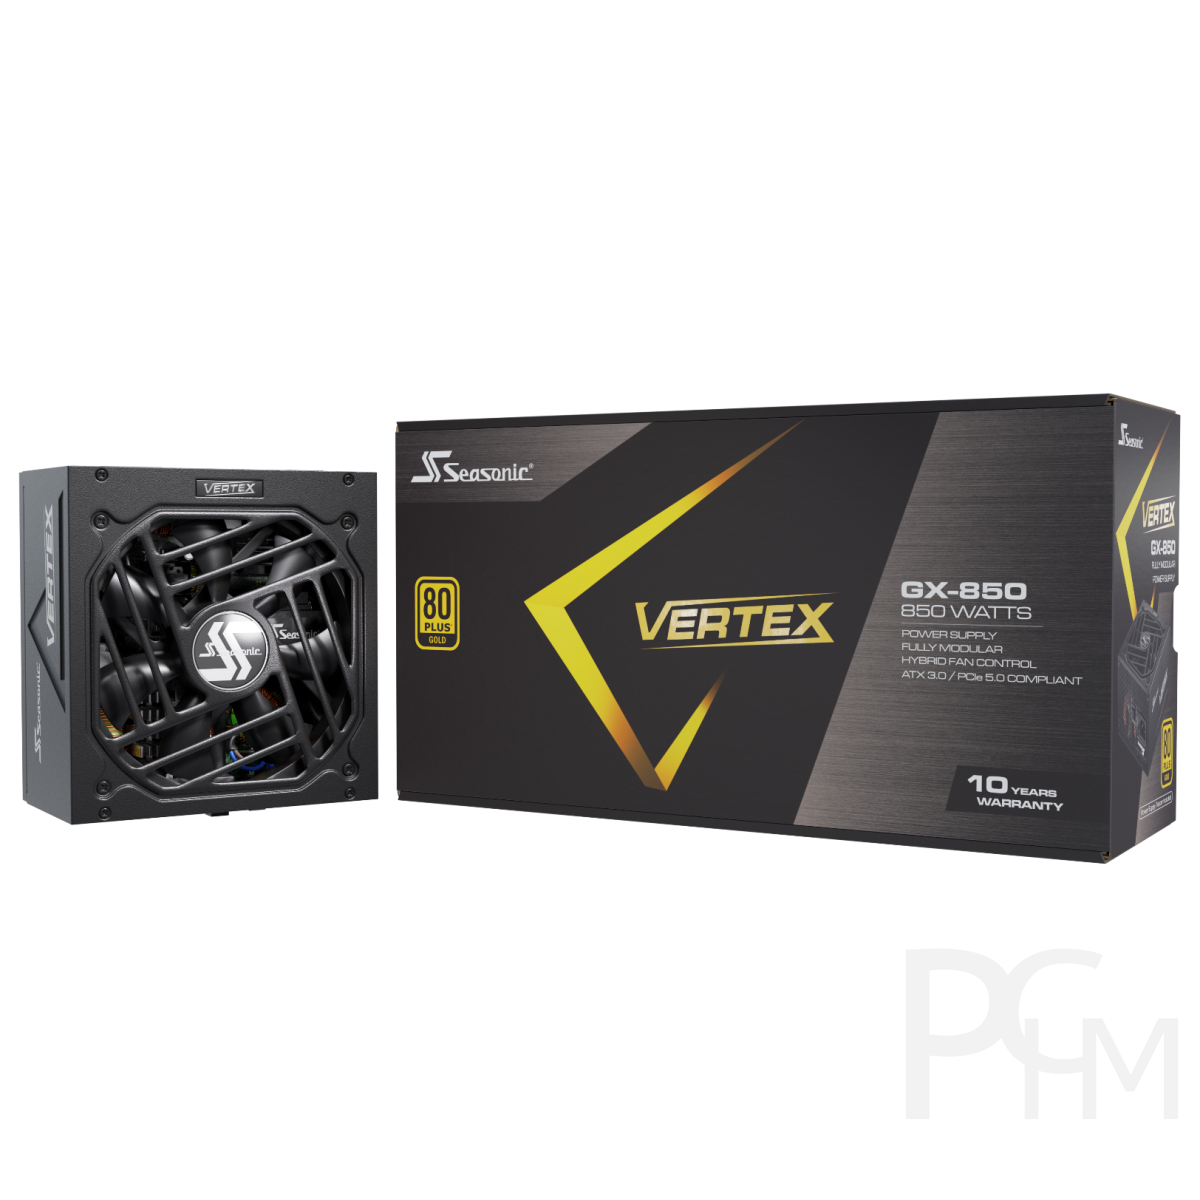 Seasonic I Vertex I GX-850w I ATX 3.0 & 12VHPWR I 80+ Gold, 159,00 €